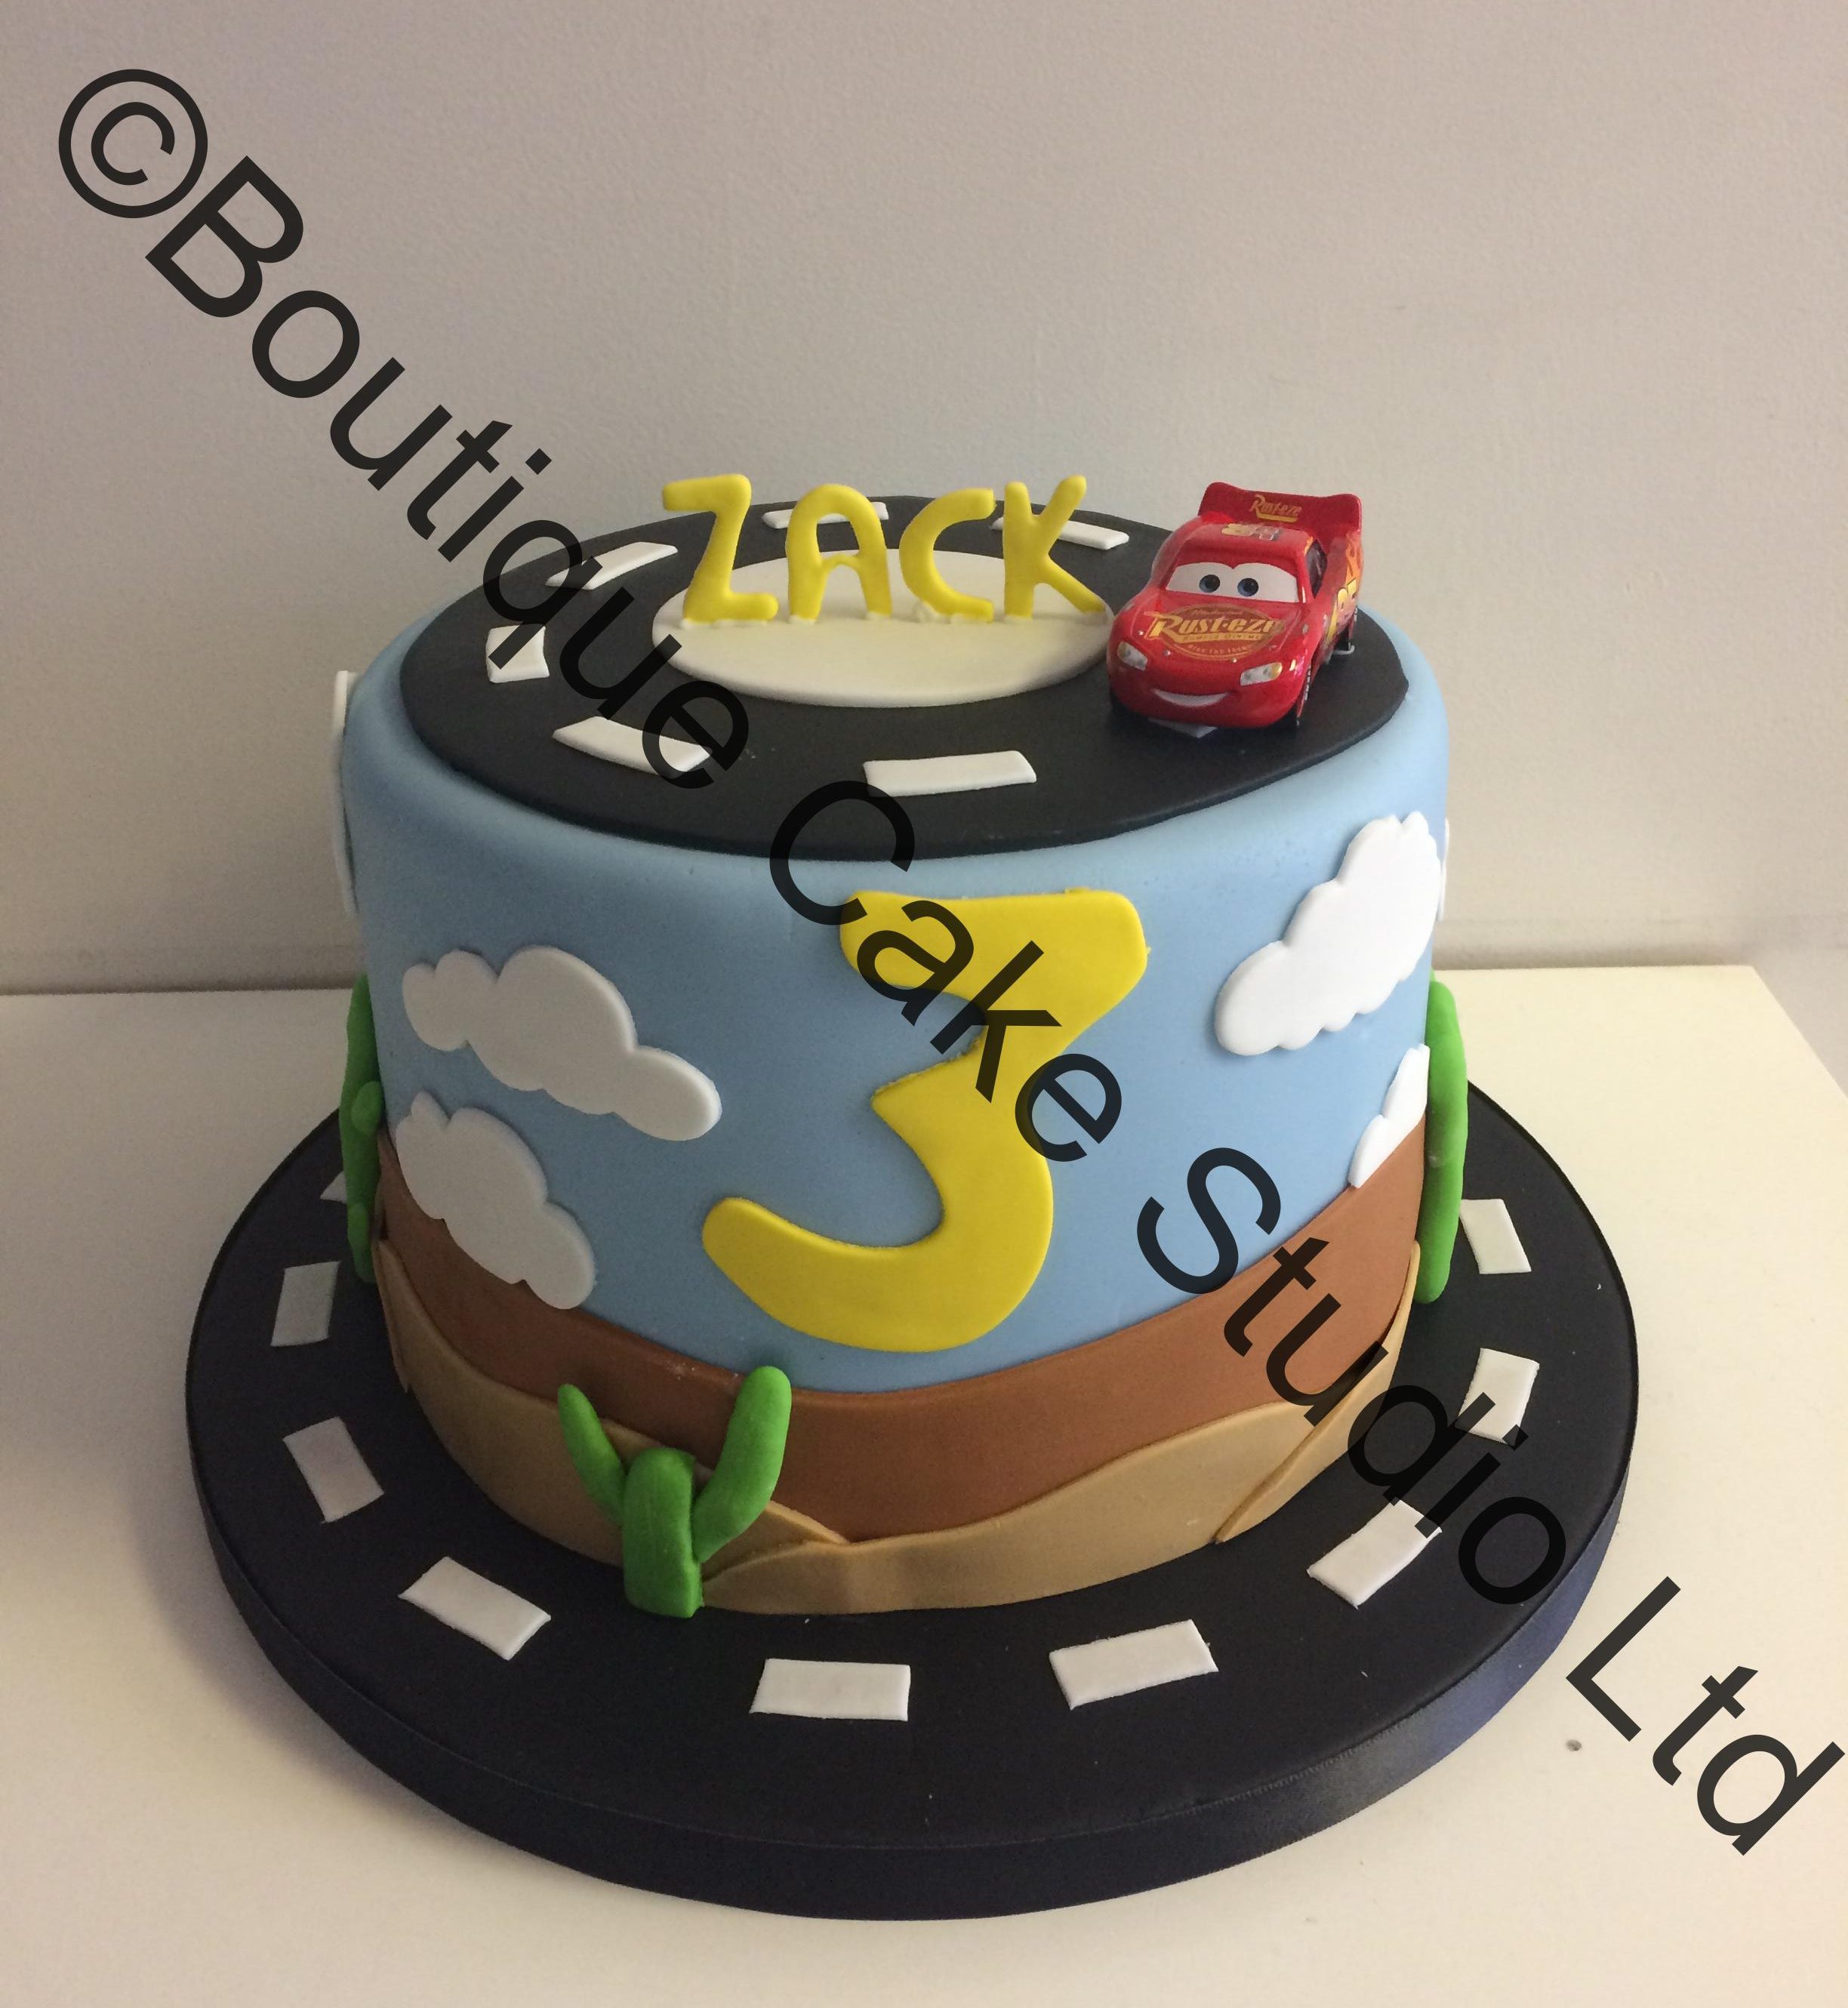 Car themed cake